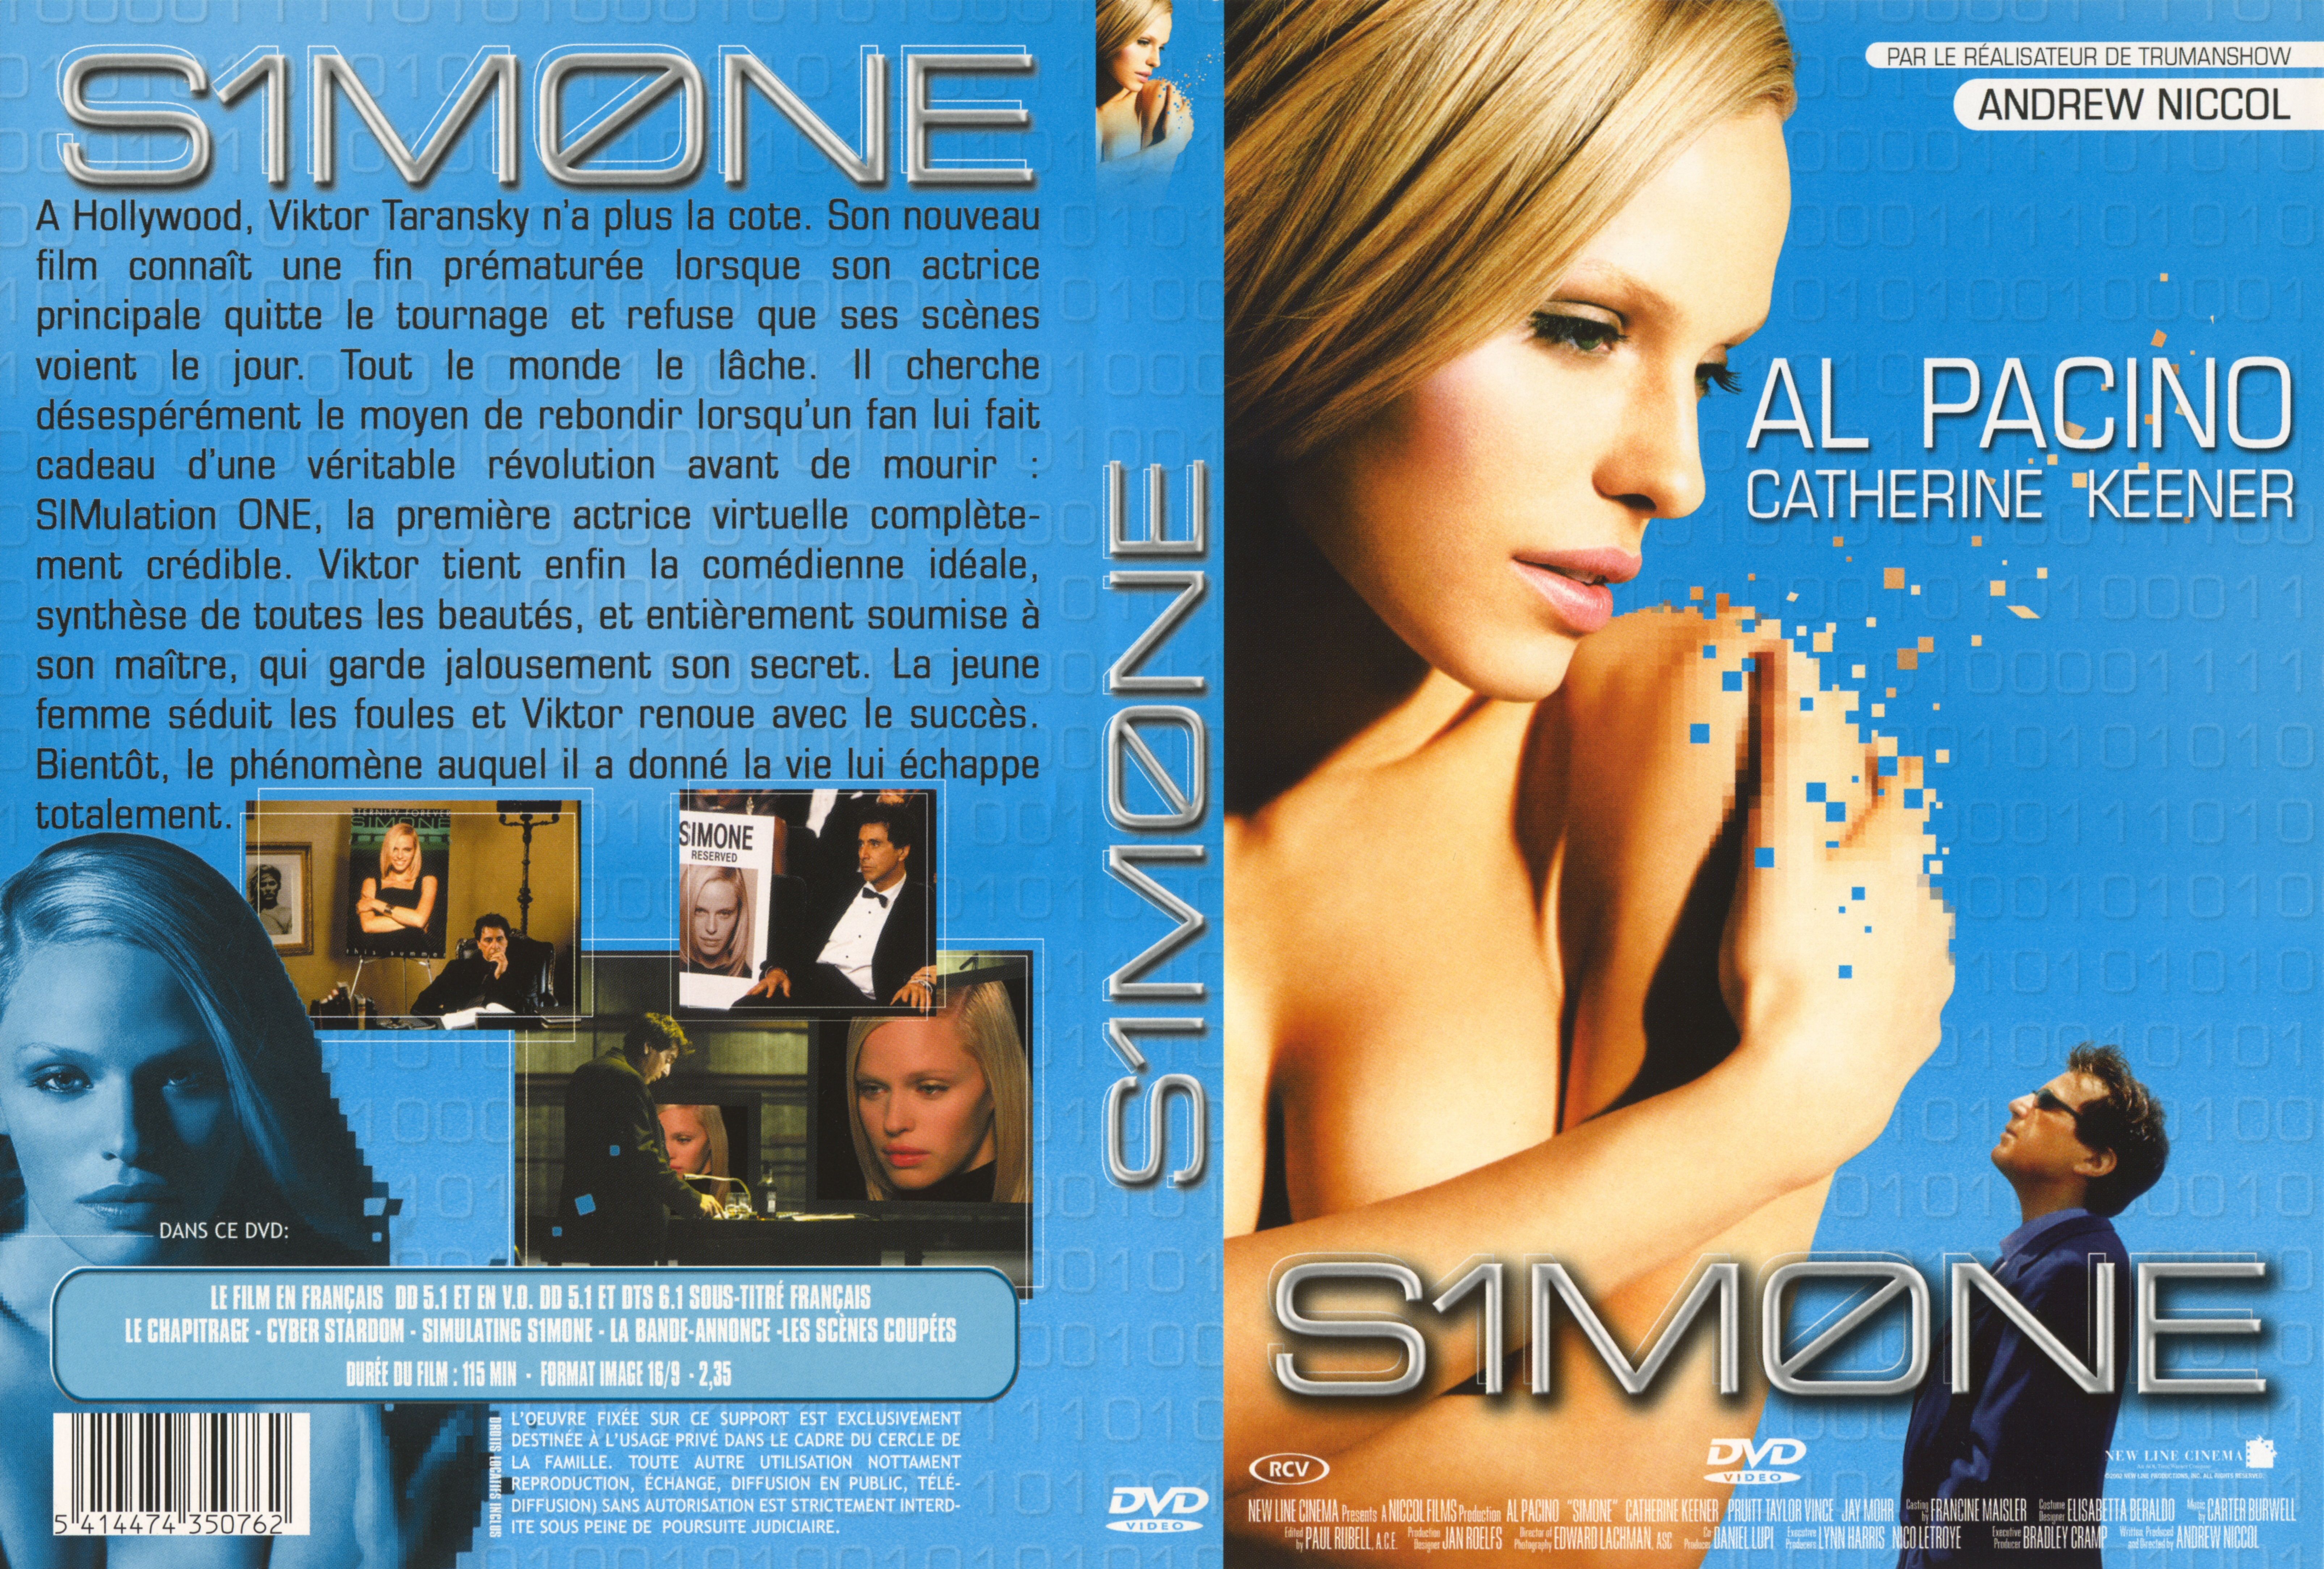 Jaquette DVD Simone v2